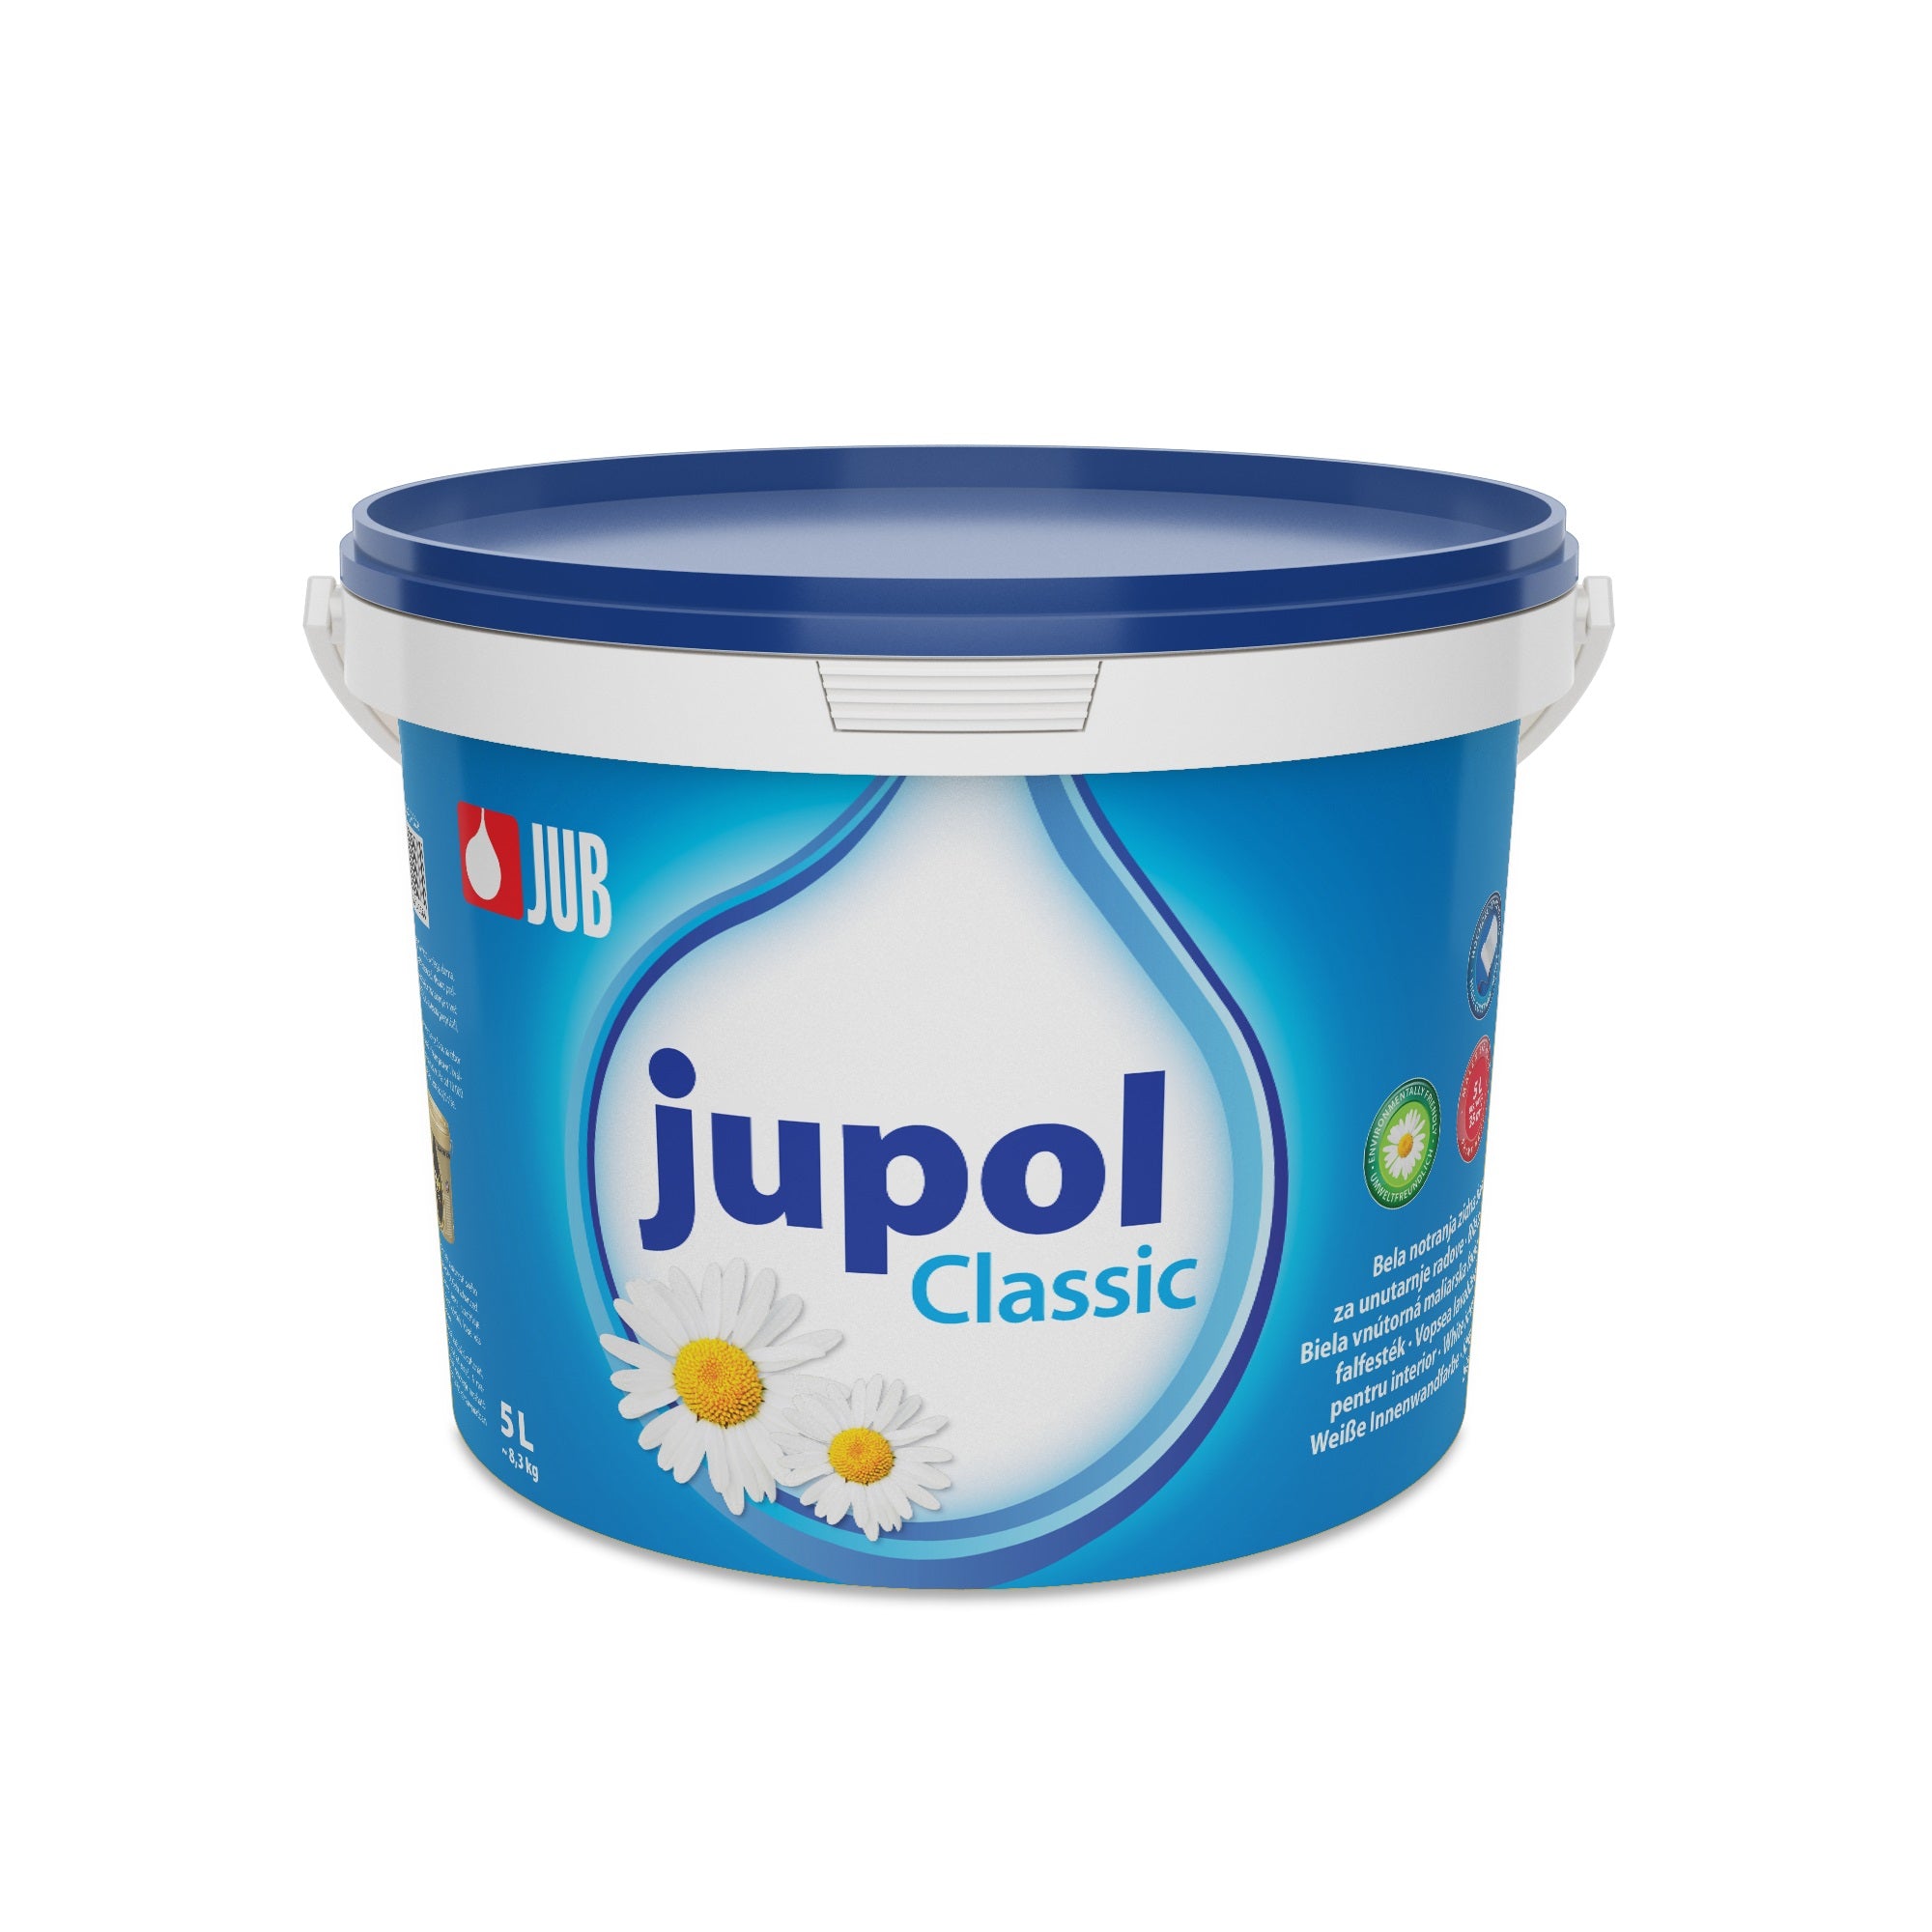 JUB JUPOL Classic biela vnútorná maliarska farba 5 l